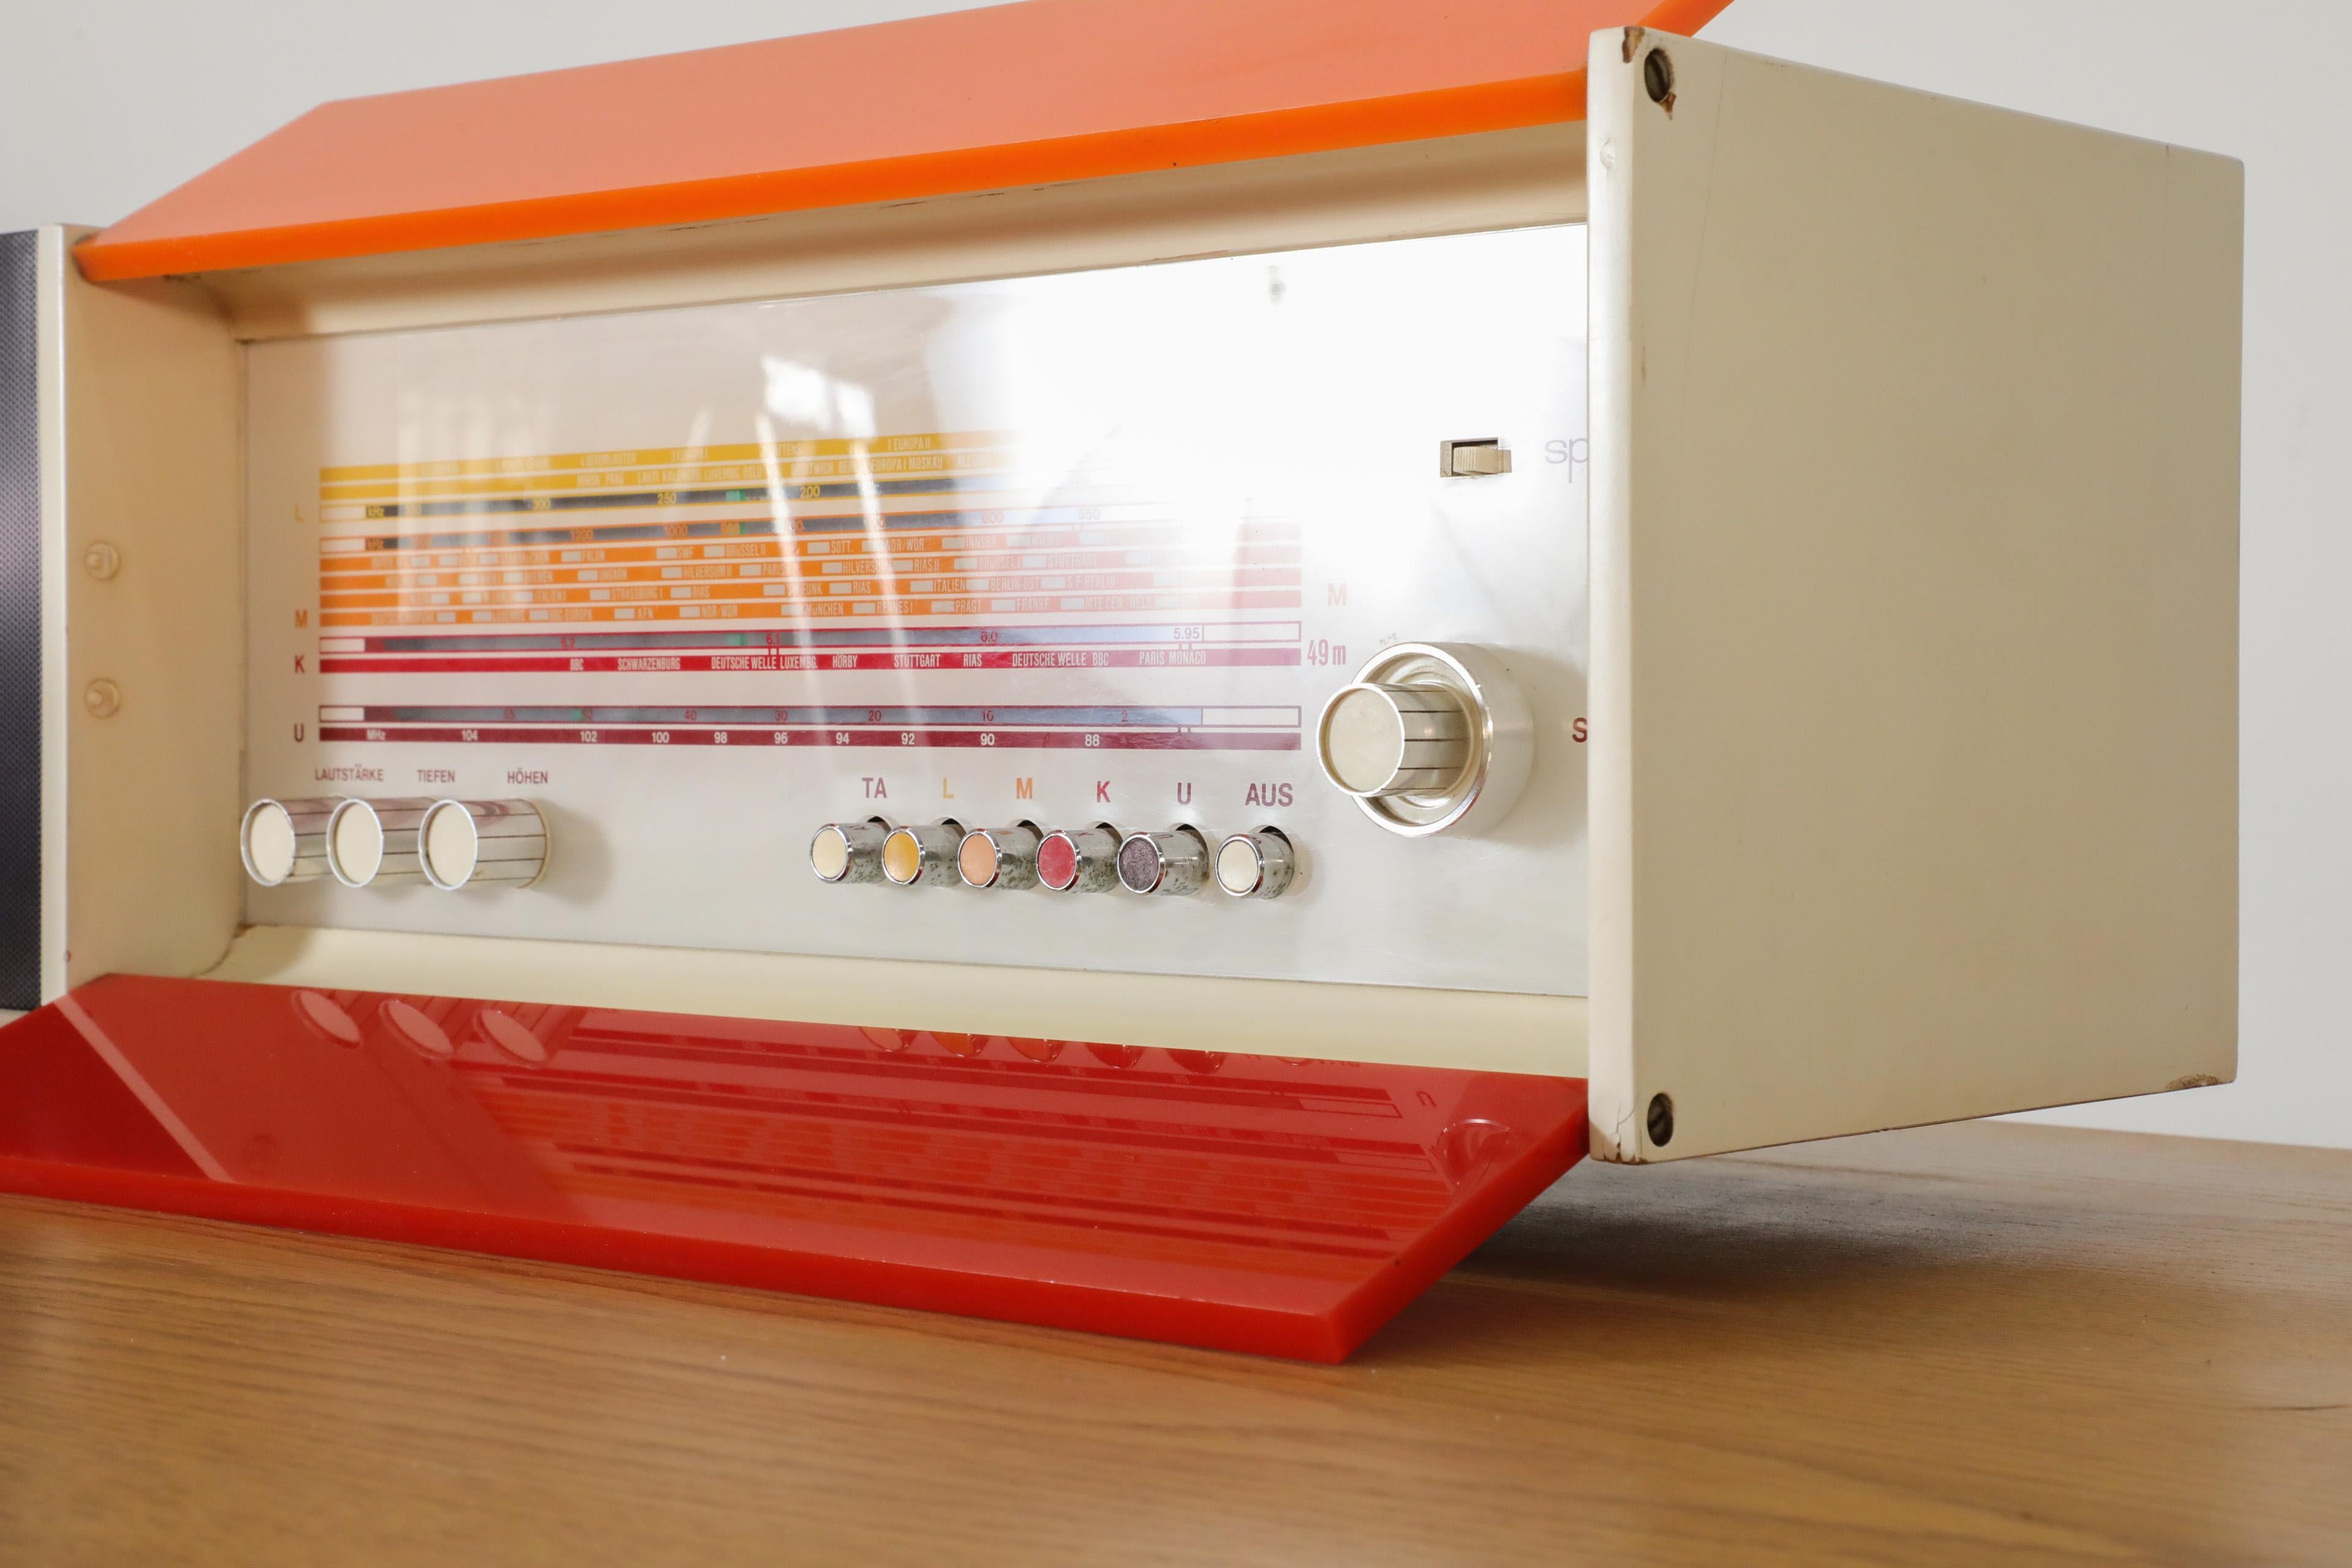 Metal Raymond Loewy Designed Nordmende Spectra Futura Transistor Radio in Red & Orange